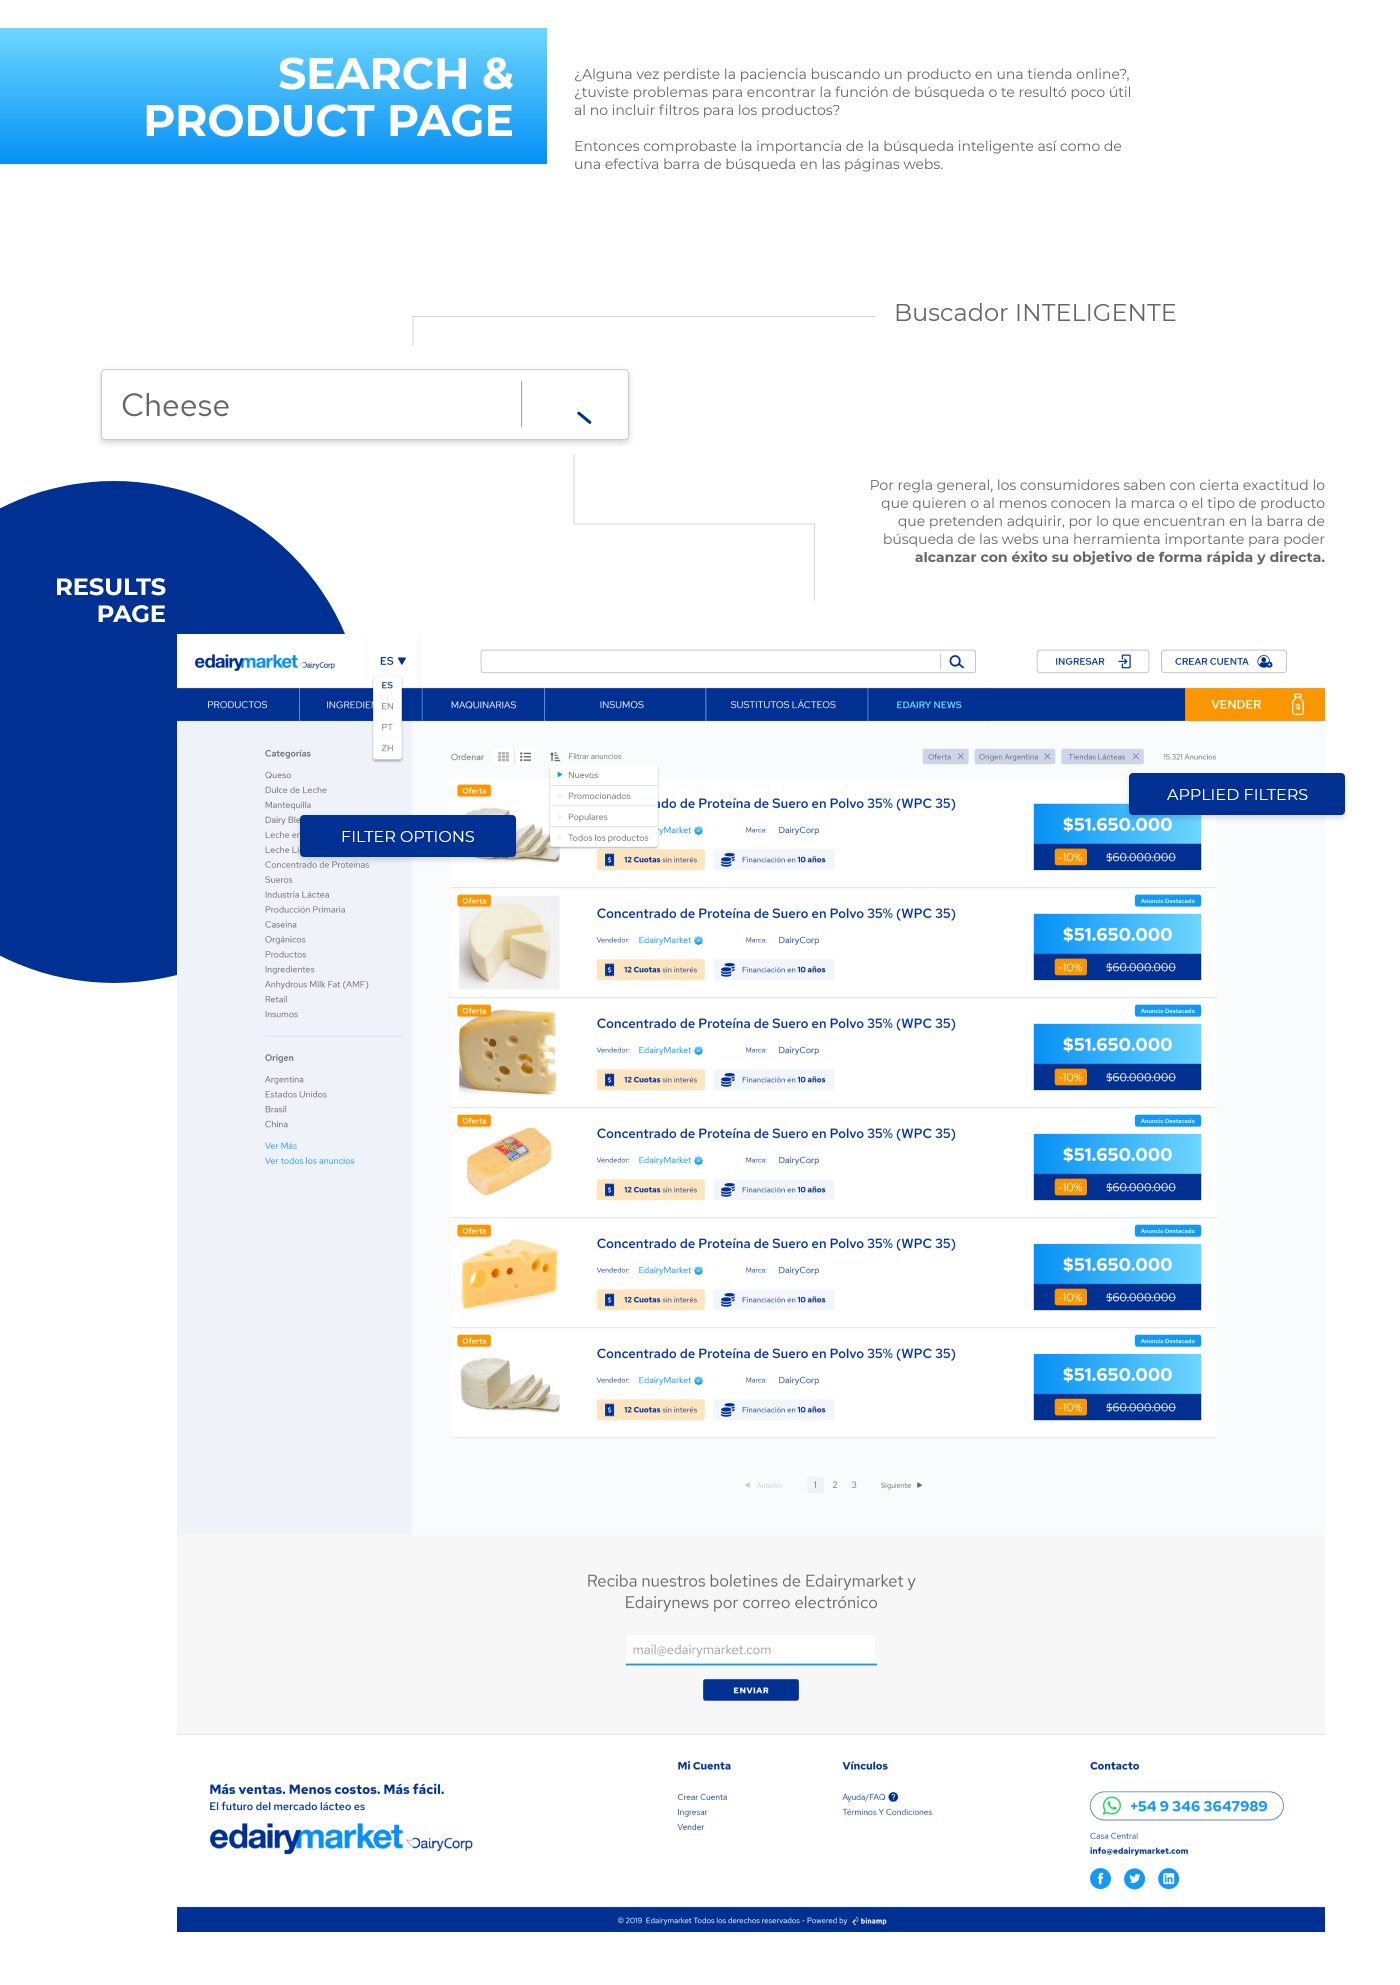 desarrollo web diseño gráfico Diseño web Ecommerce graphic design  interfaz Marketplace ui ux UX UI Web Design 